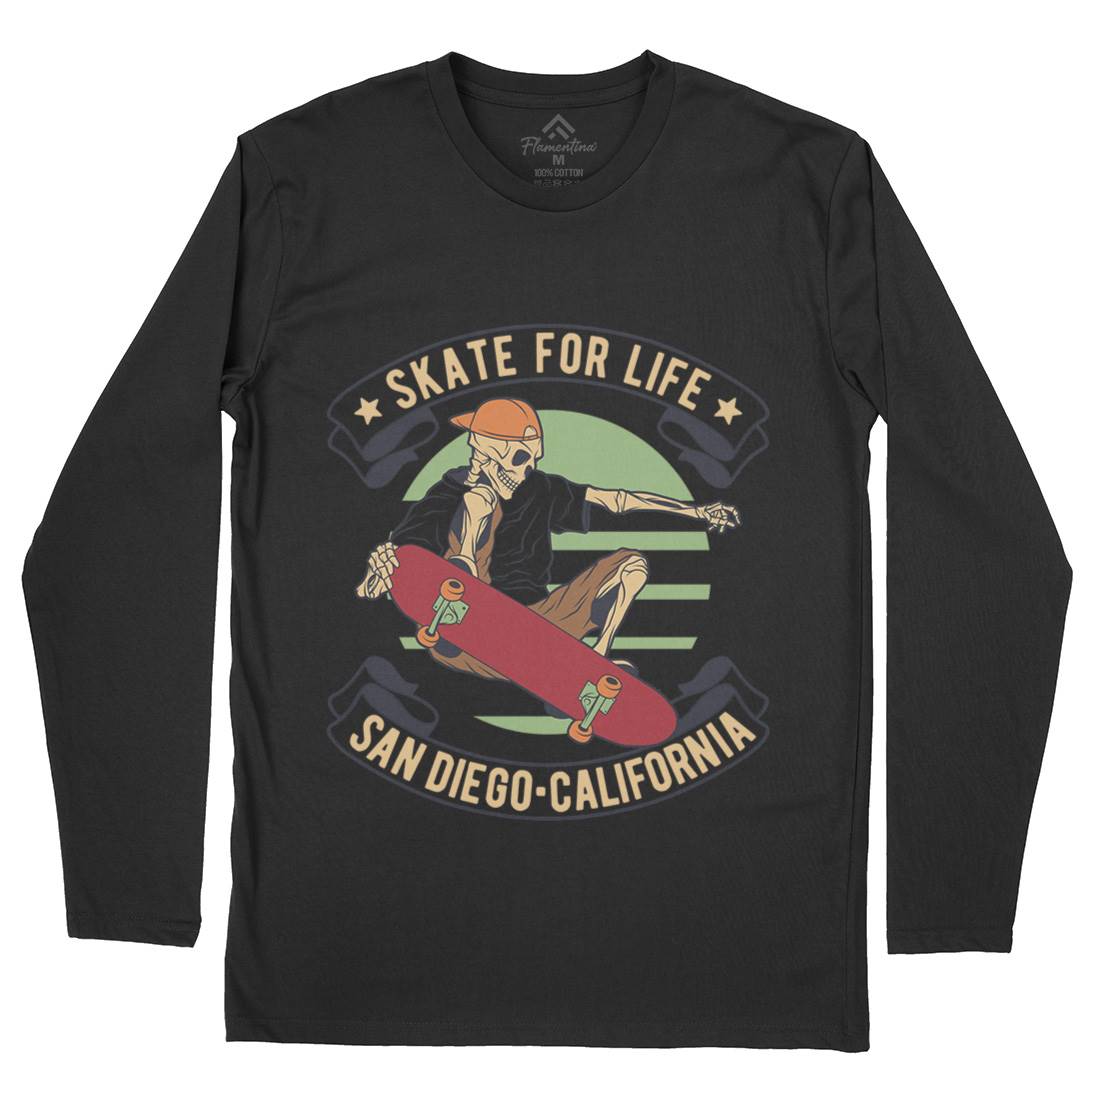 For Life Mens Long Sleeve T-Shirt Skate D970